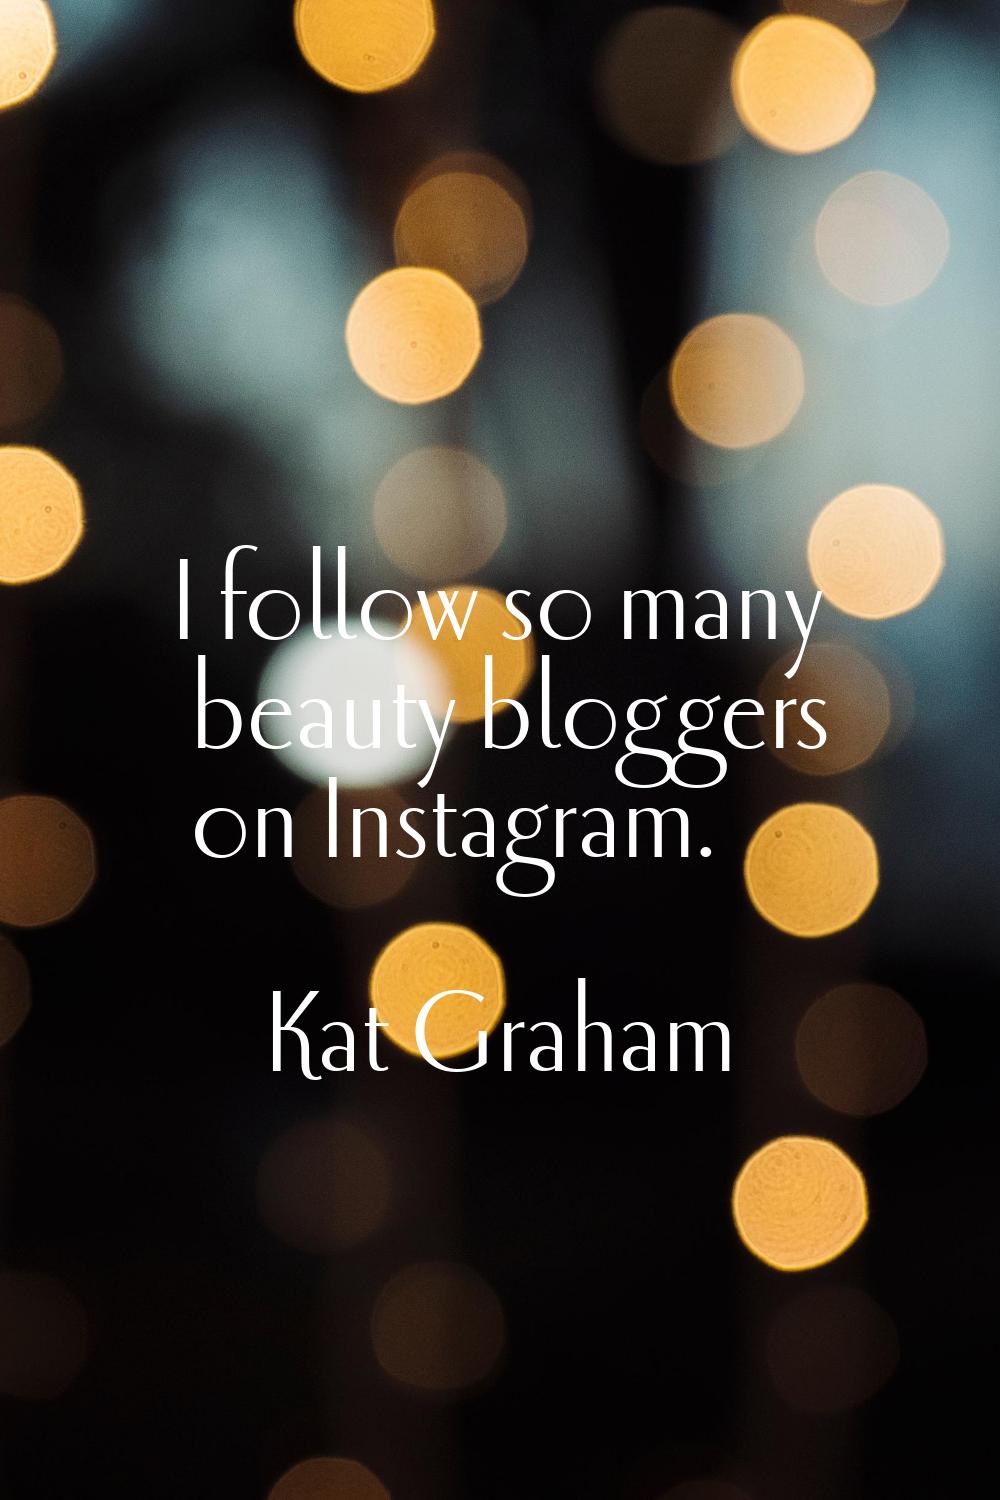 I follow so many beauty bloggers on Instagram.